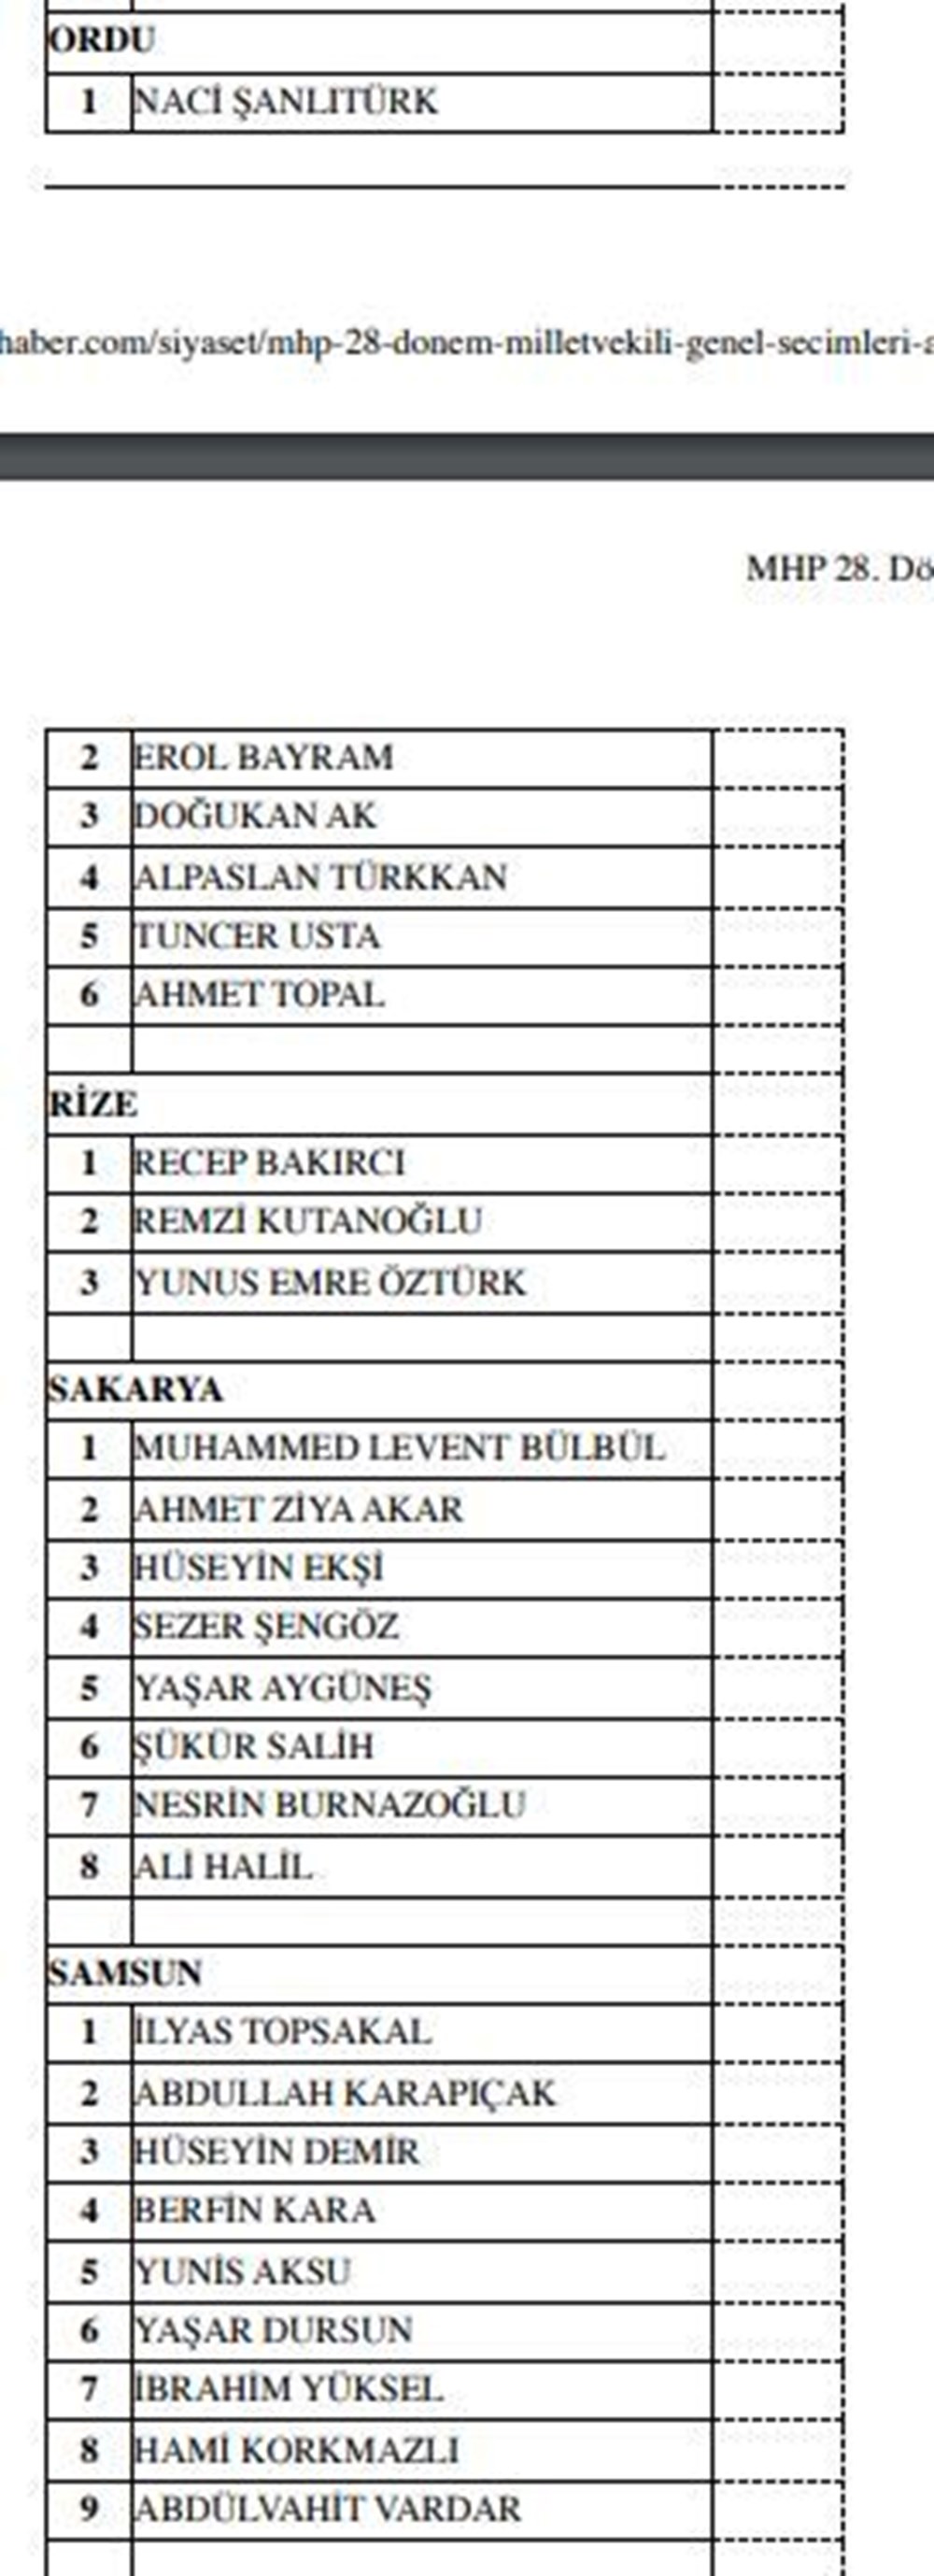 MHP milletvekili aday listesi açıklandı (MHP hangi illerde, kaç aday gösterdi?) - 24